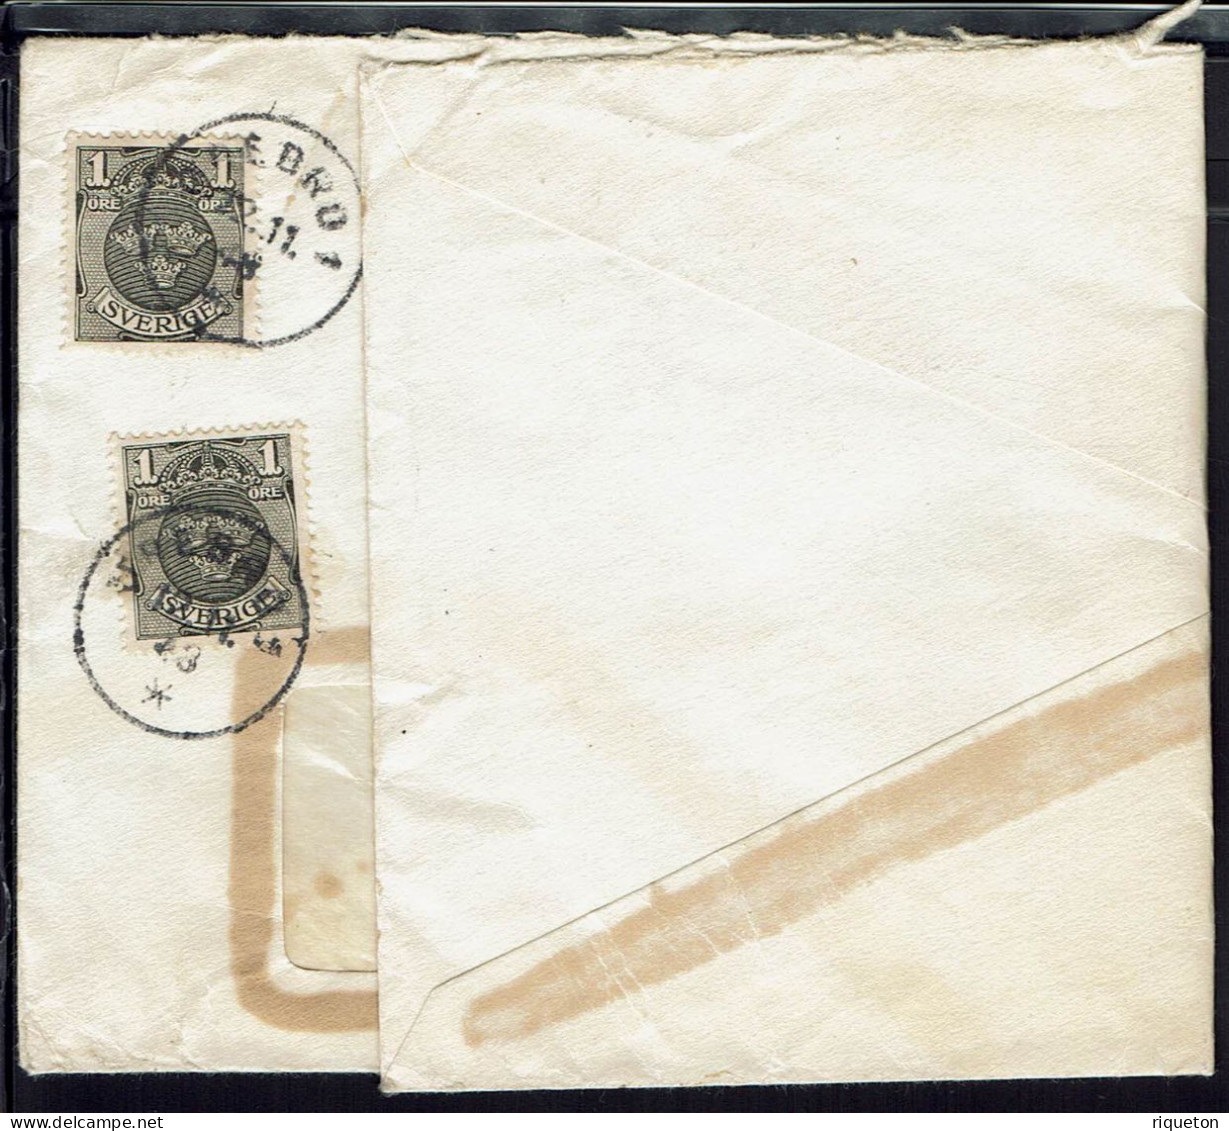 Affranchissement Multiple Sur Enveloppe à Fenêtre  A.B  Svensk  Fotokonst  Orebro. Cachets Orebro 1 Du 12-11-1948. - Storia Postale